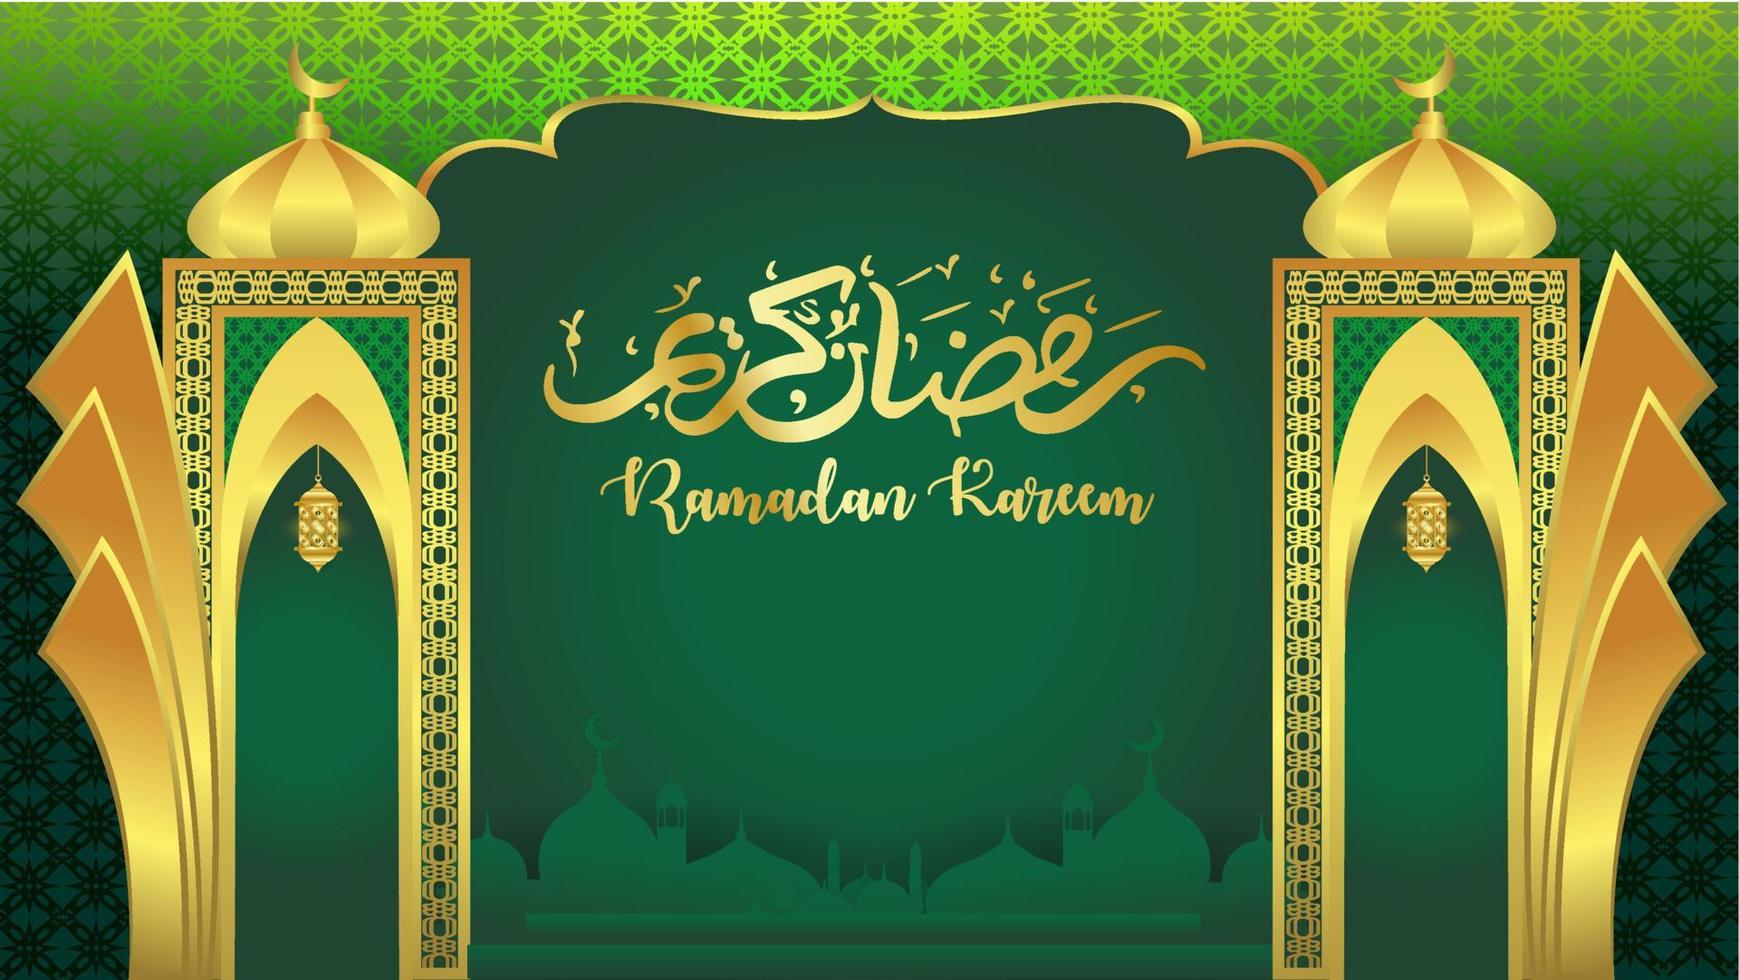 muslimischer neujahrshintergrund im monat ramadan islamischer illustrationsvektor vektor